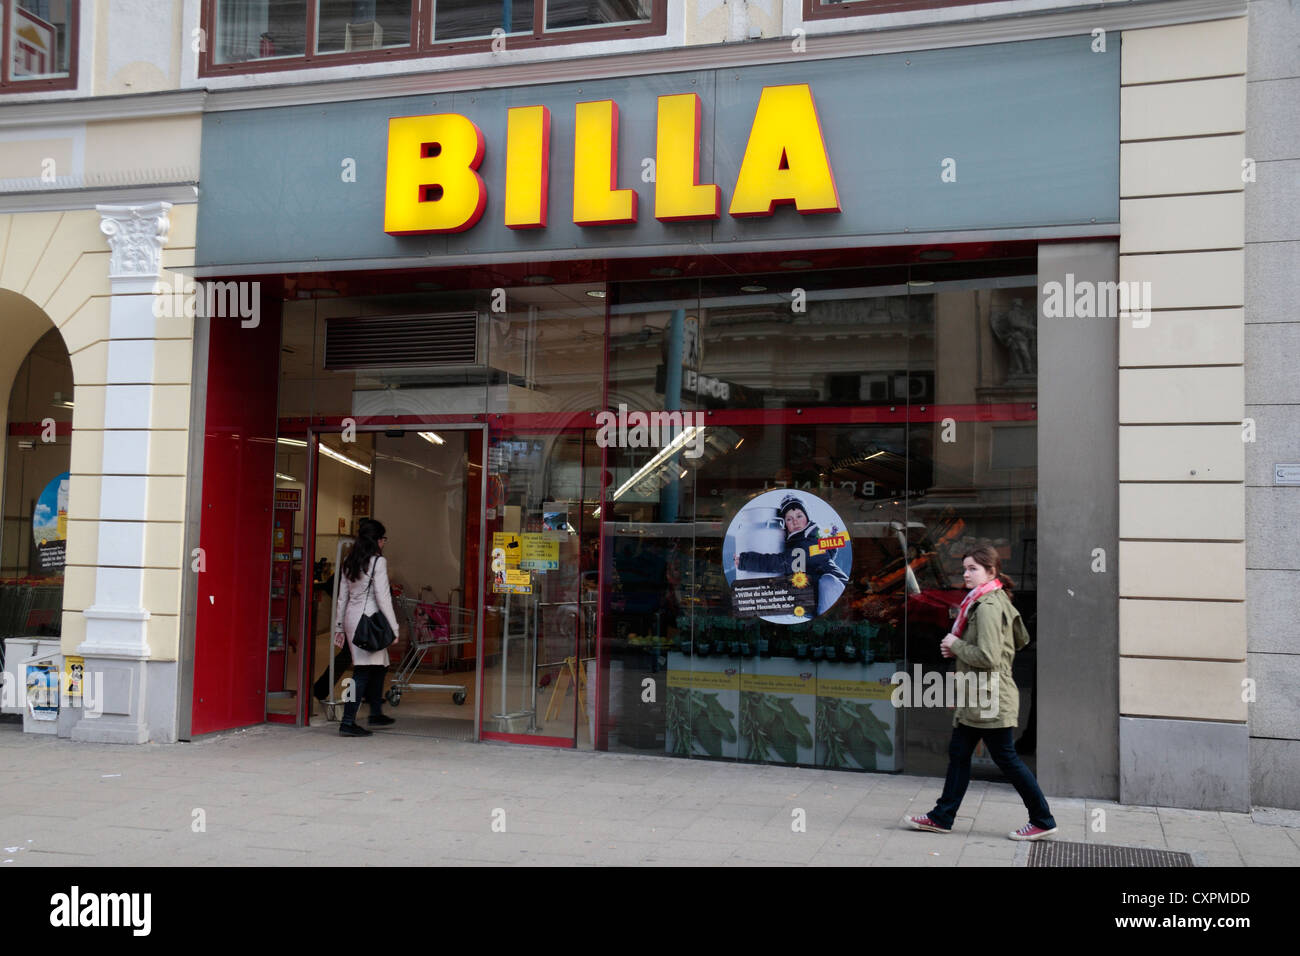 A BILLA supermarket in Vienna, Austria. Stock Photo